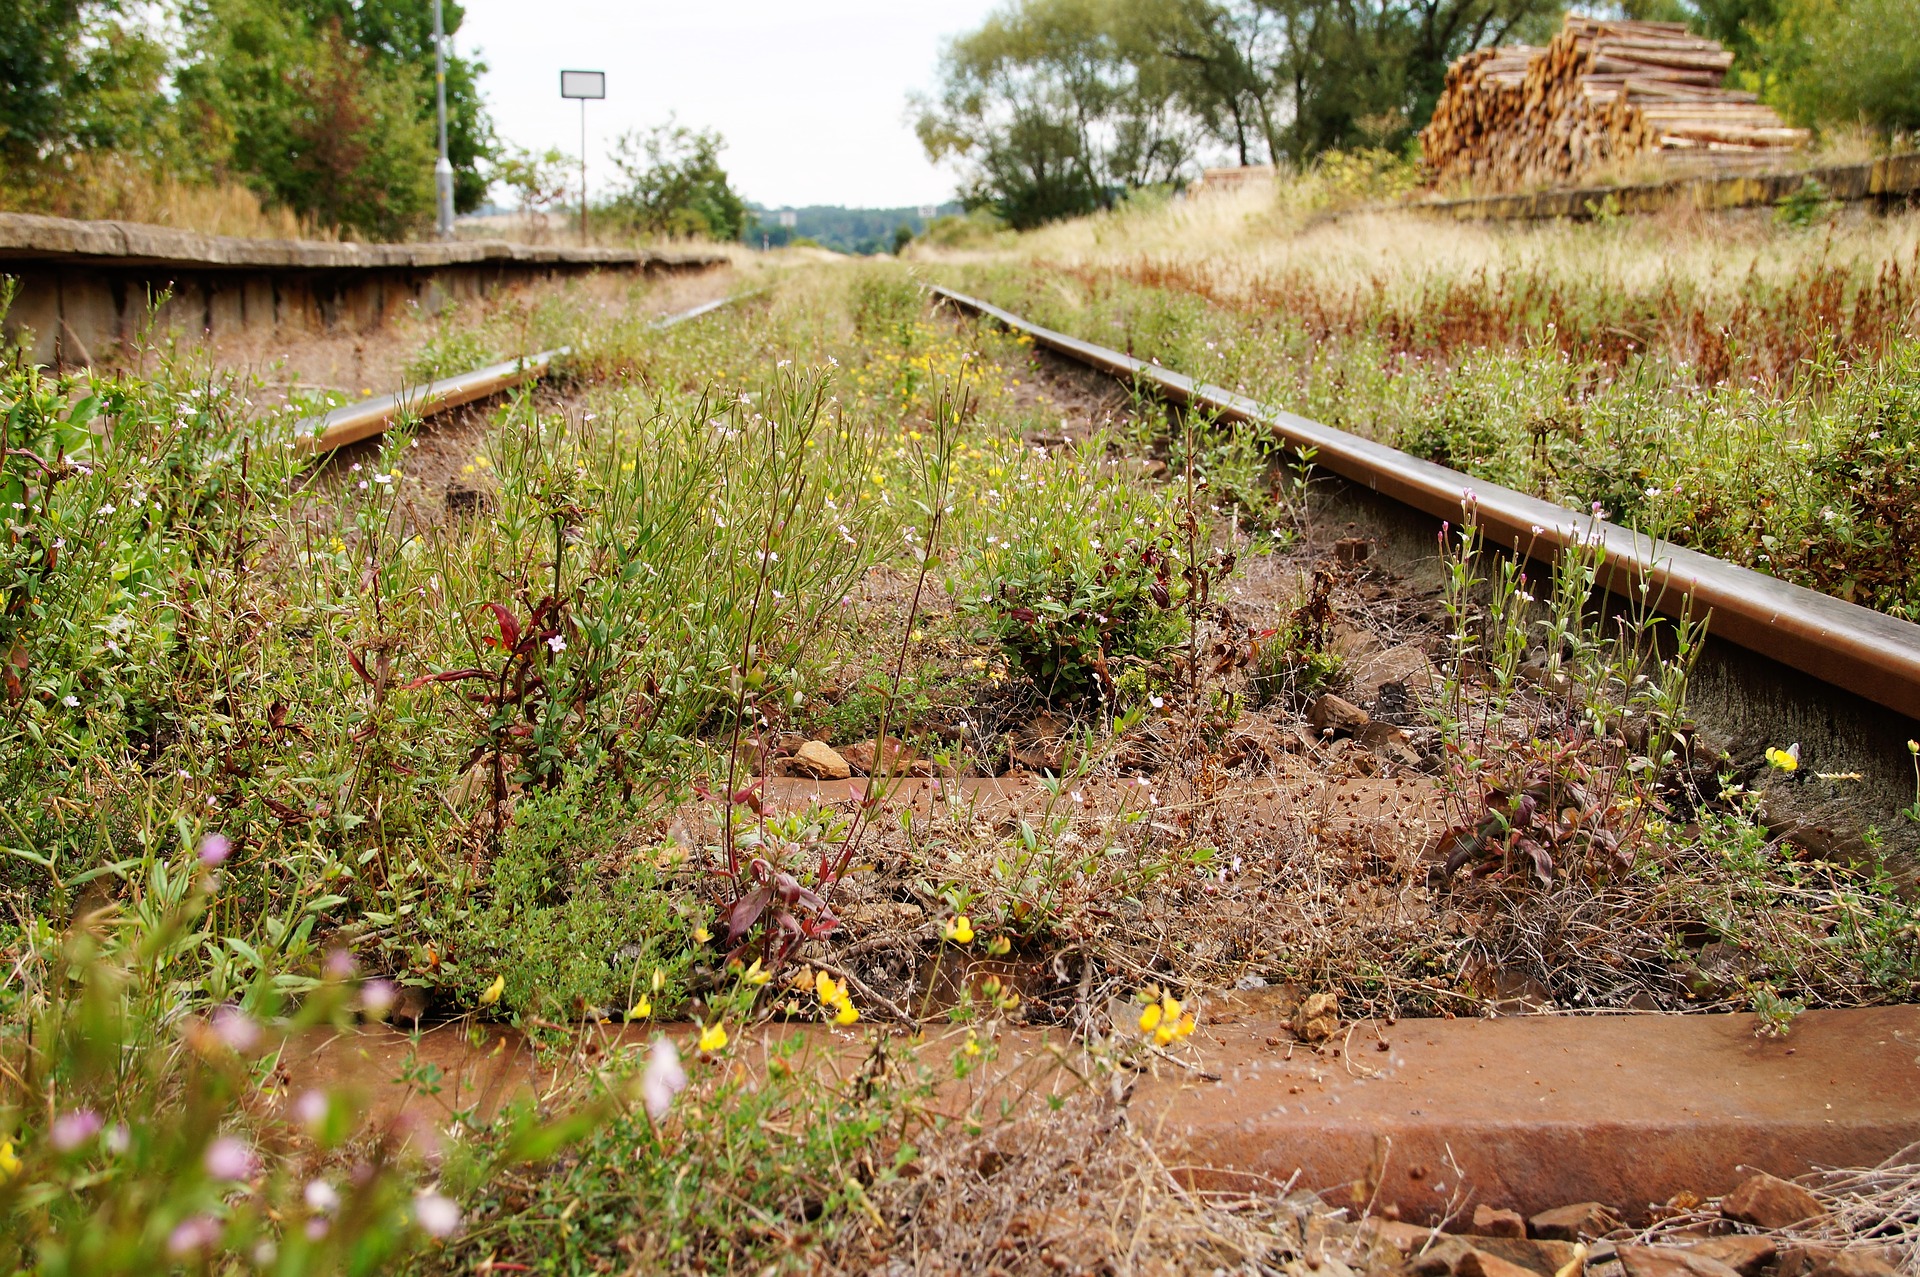 Möchte man ehemalige Bahnstrecken wiederbeleben, gibt es aktuell zu viele Hürden.